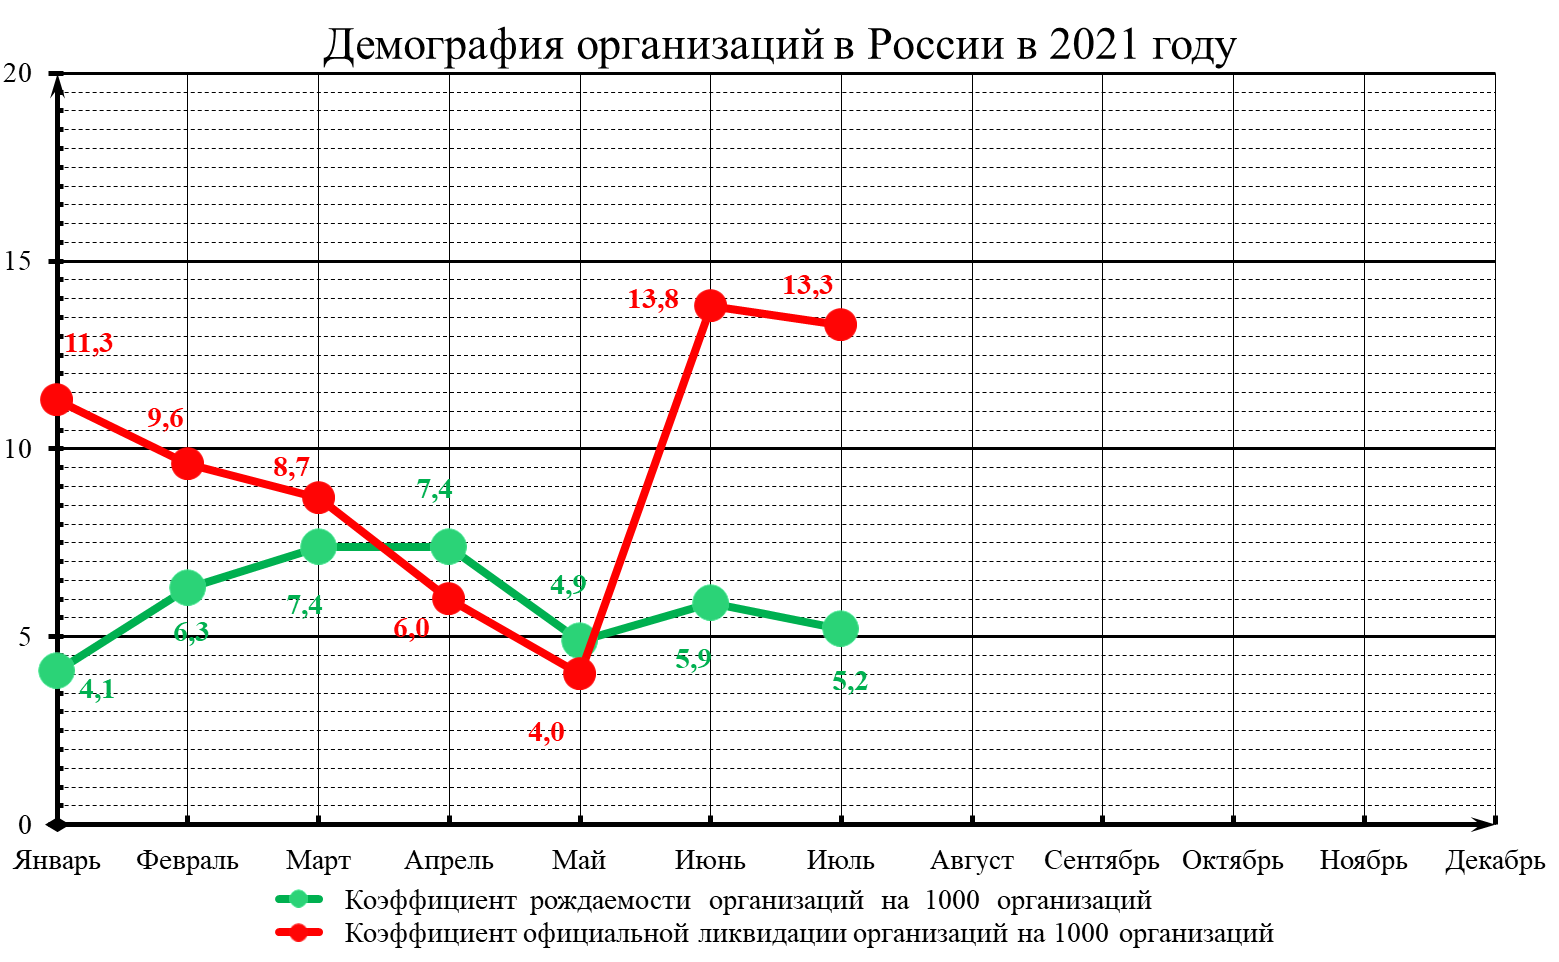 Демография организаций в России в 2021 году